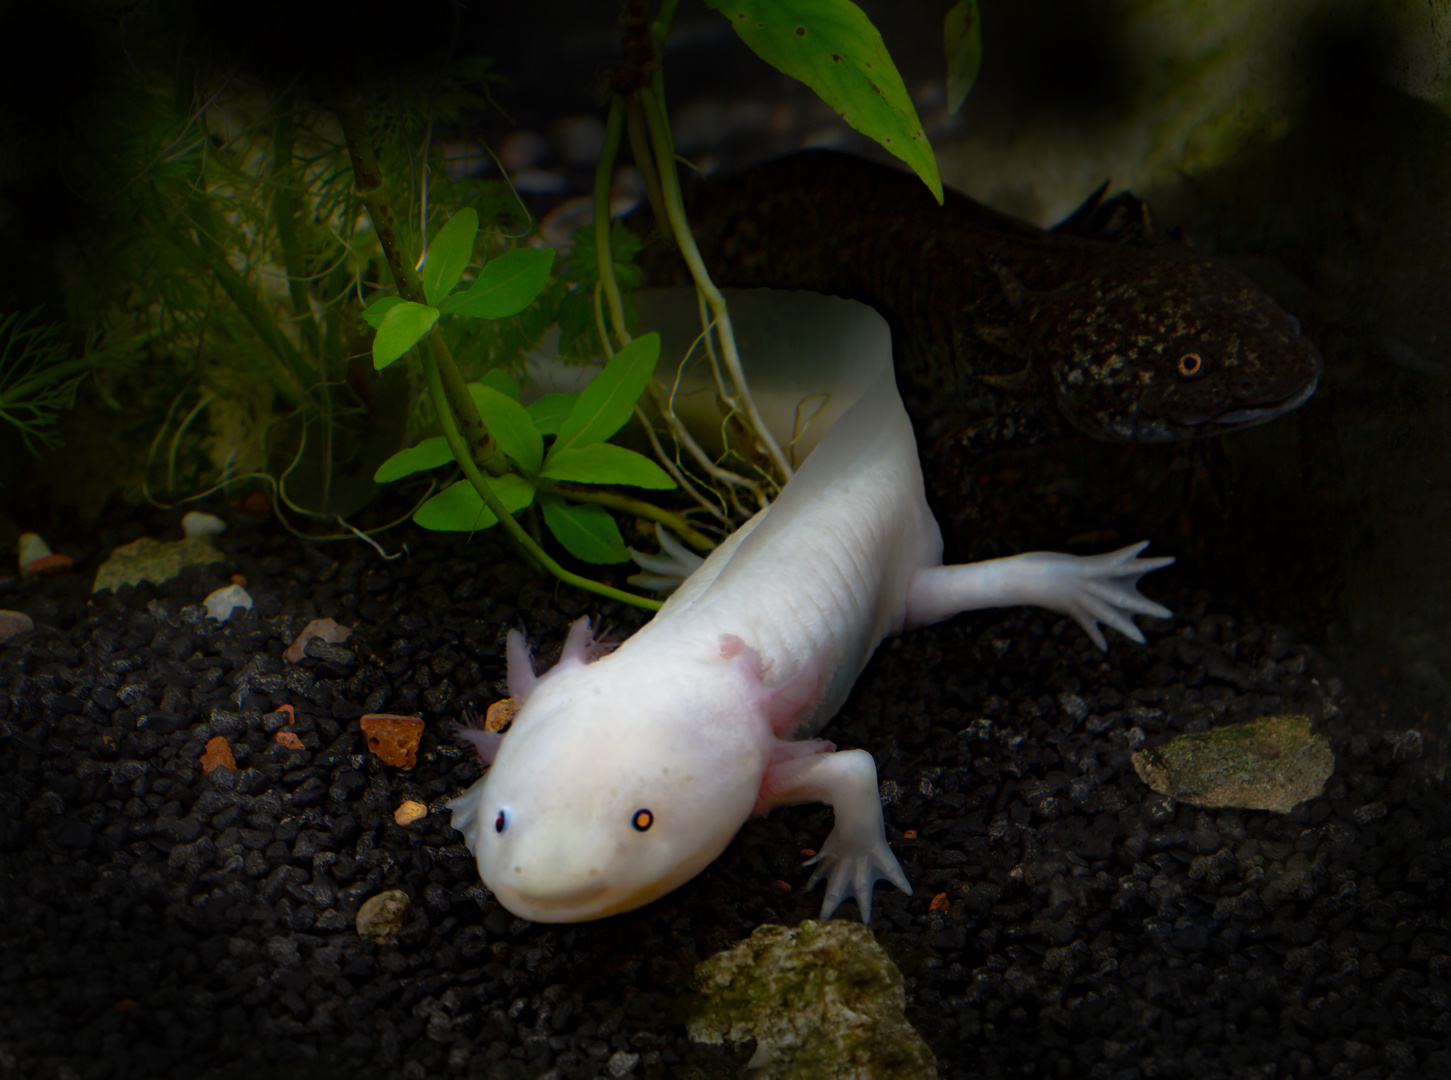 Leuzistischer Axolotl und dunkler Axolotl